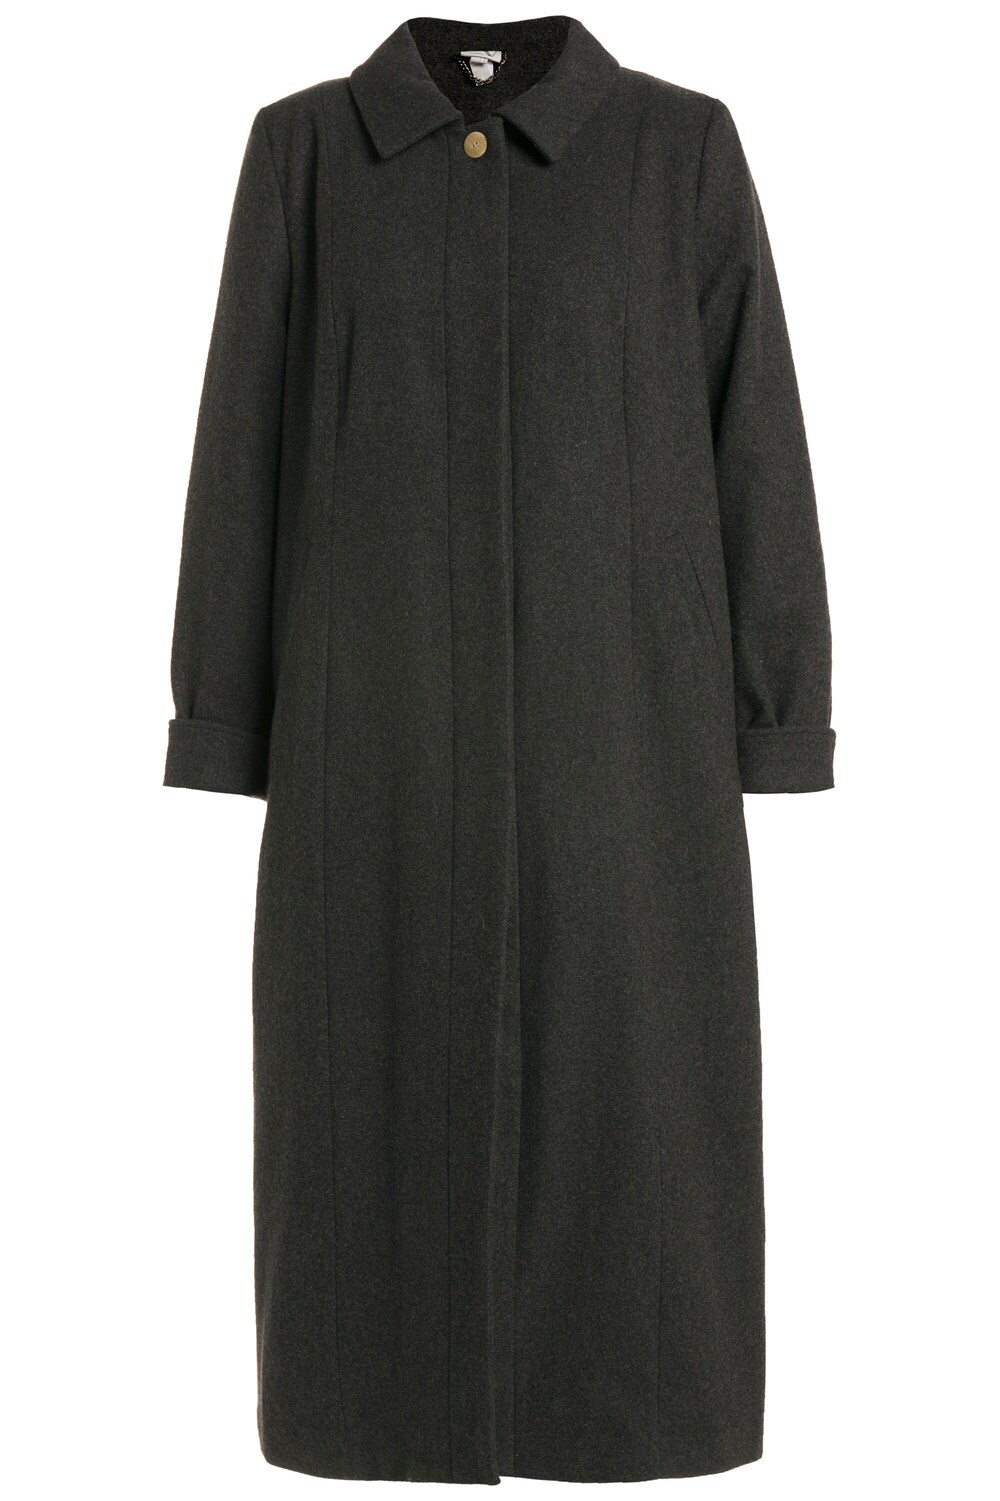 Межсезонное пальто Ulla Popken, темно-серый межсезонное пальто ulla popken пестрый коричневый